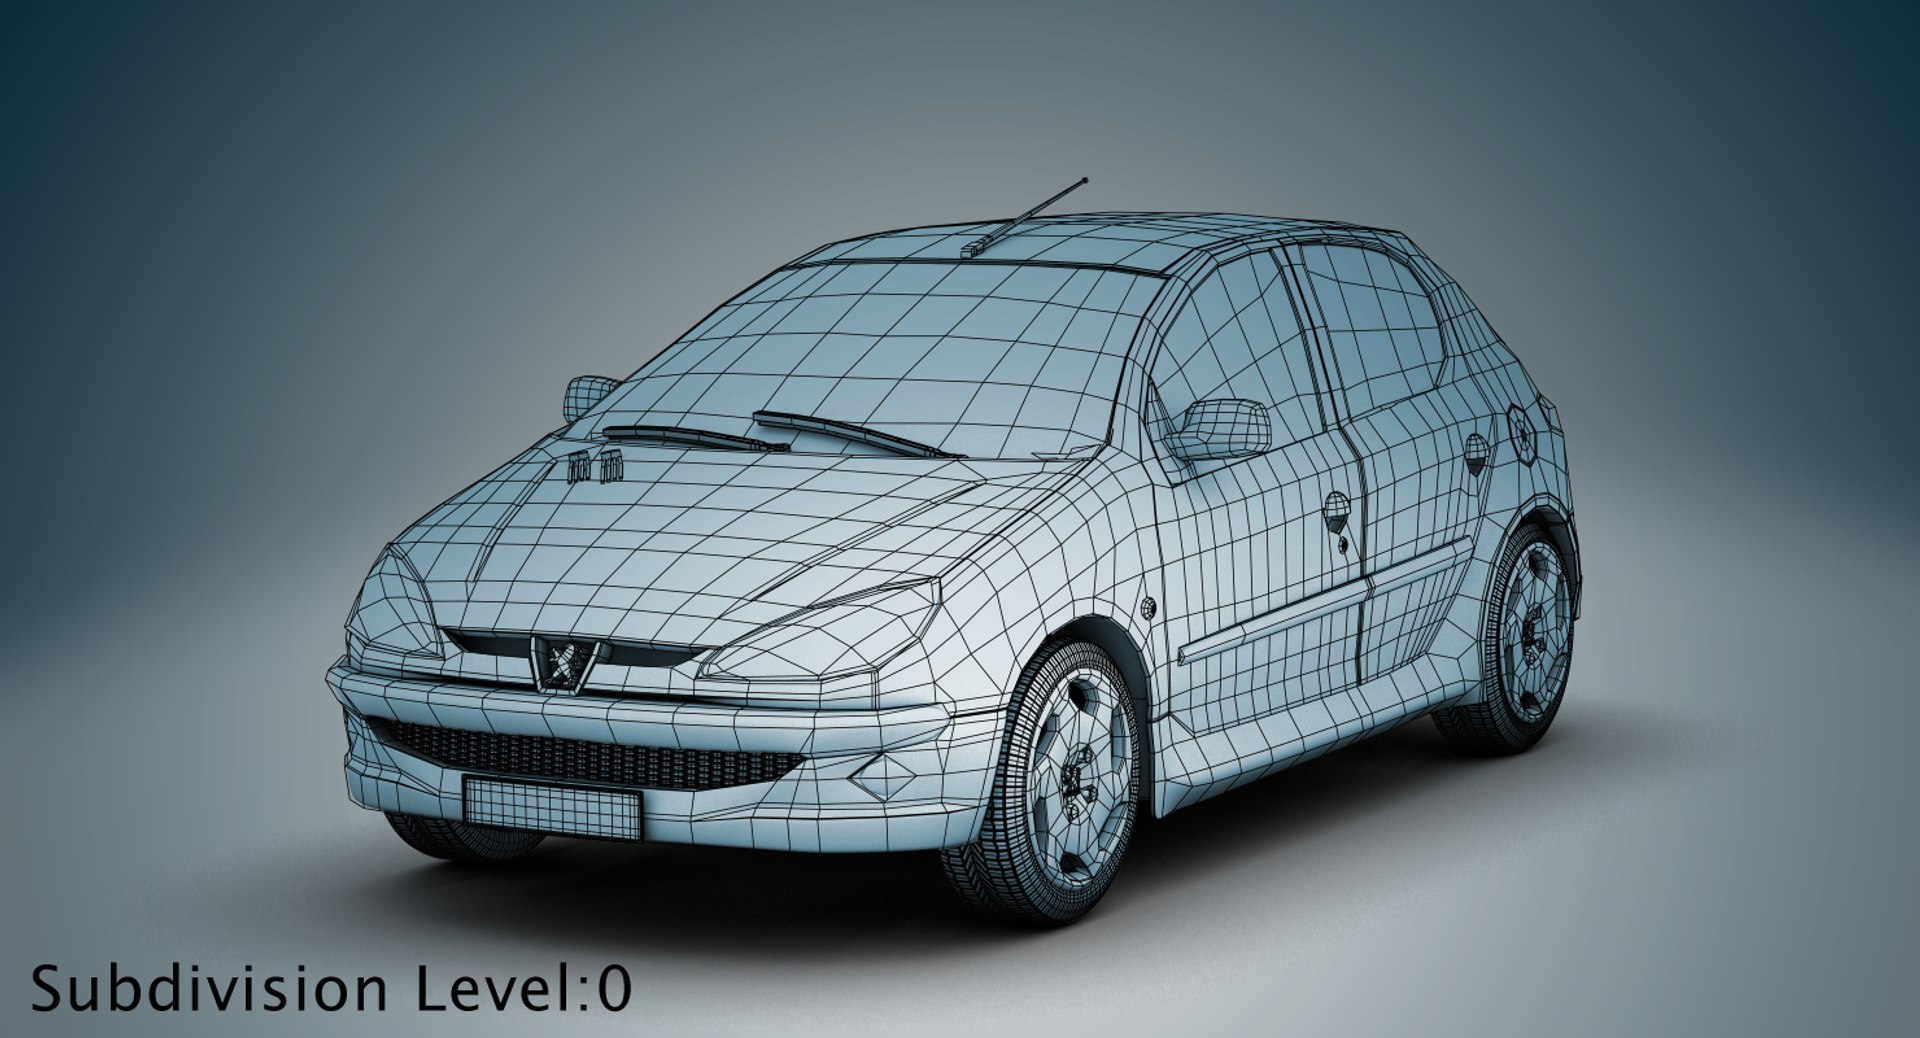 329 Peugeot 206 Car Images, Stock Photos, 3D objects, & Vectors